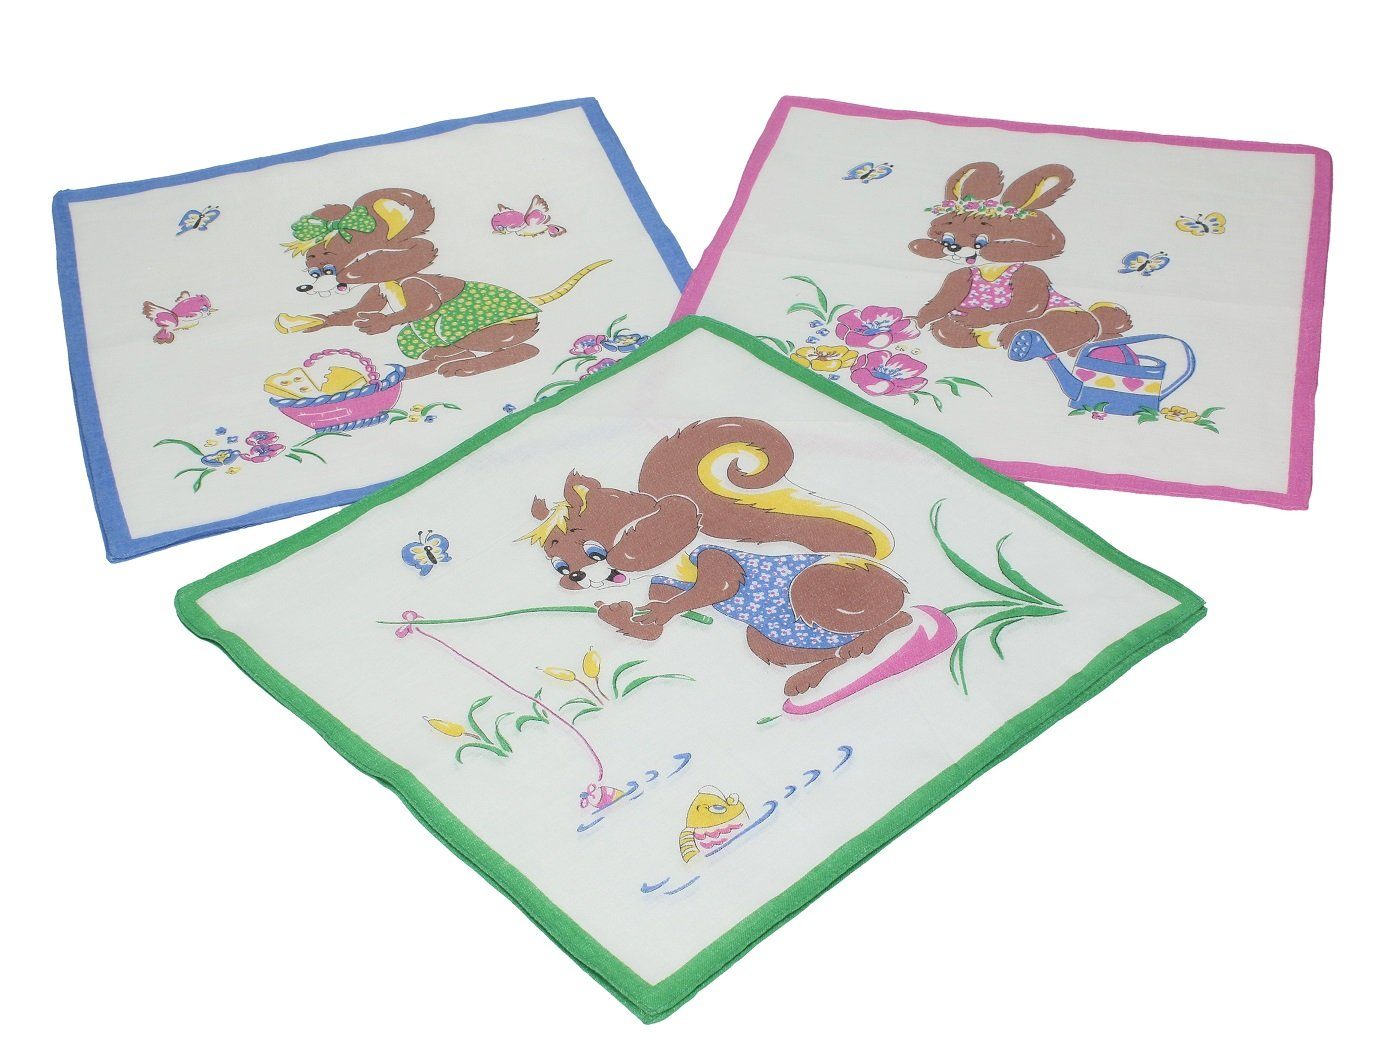 Betz Taschentuch 12 Stück Kinder Stoff Taschentücher Kindertaschentücher Set Größe 26x26 cm 100% Baumwolle Tier Motive Design 6